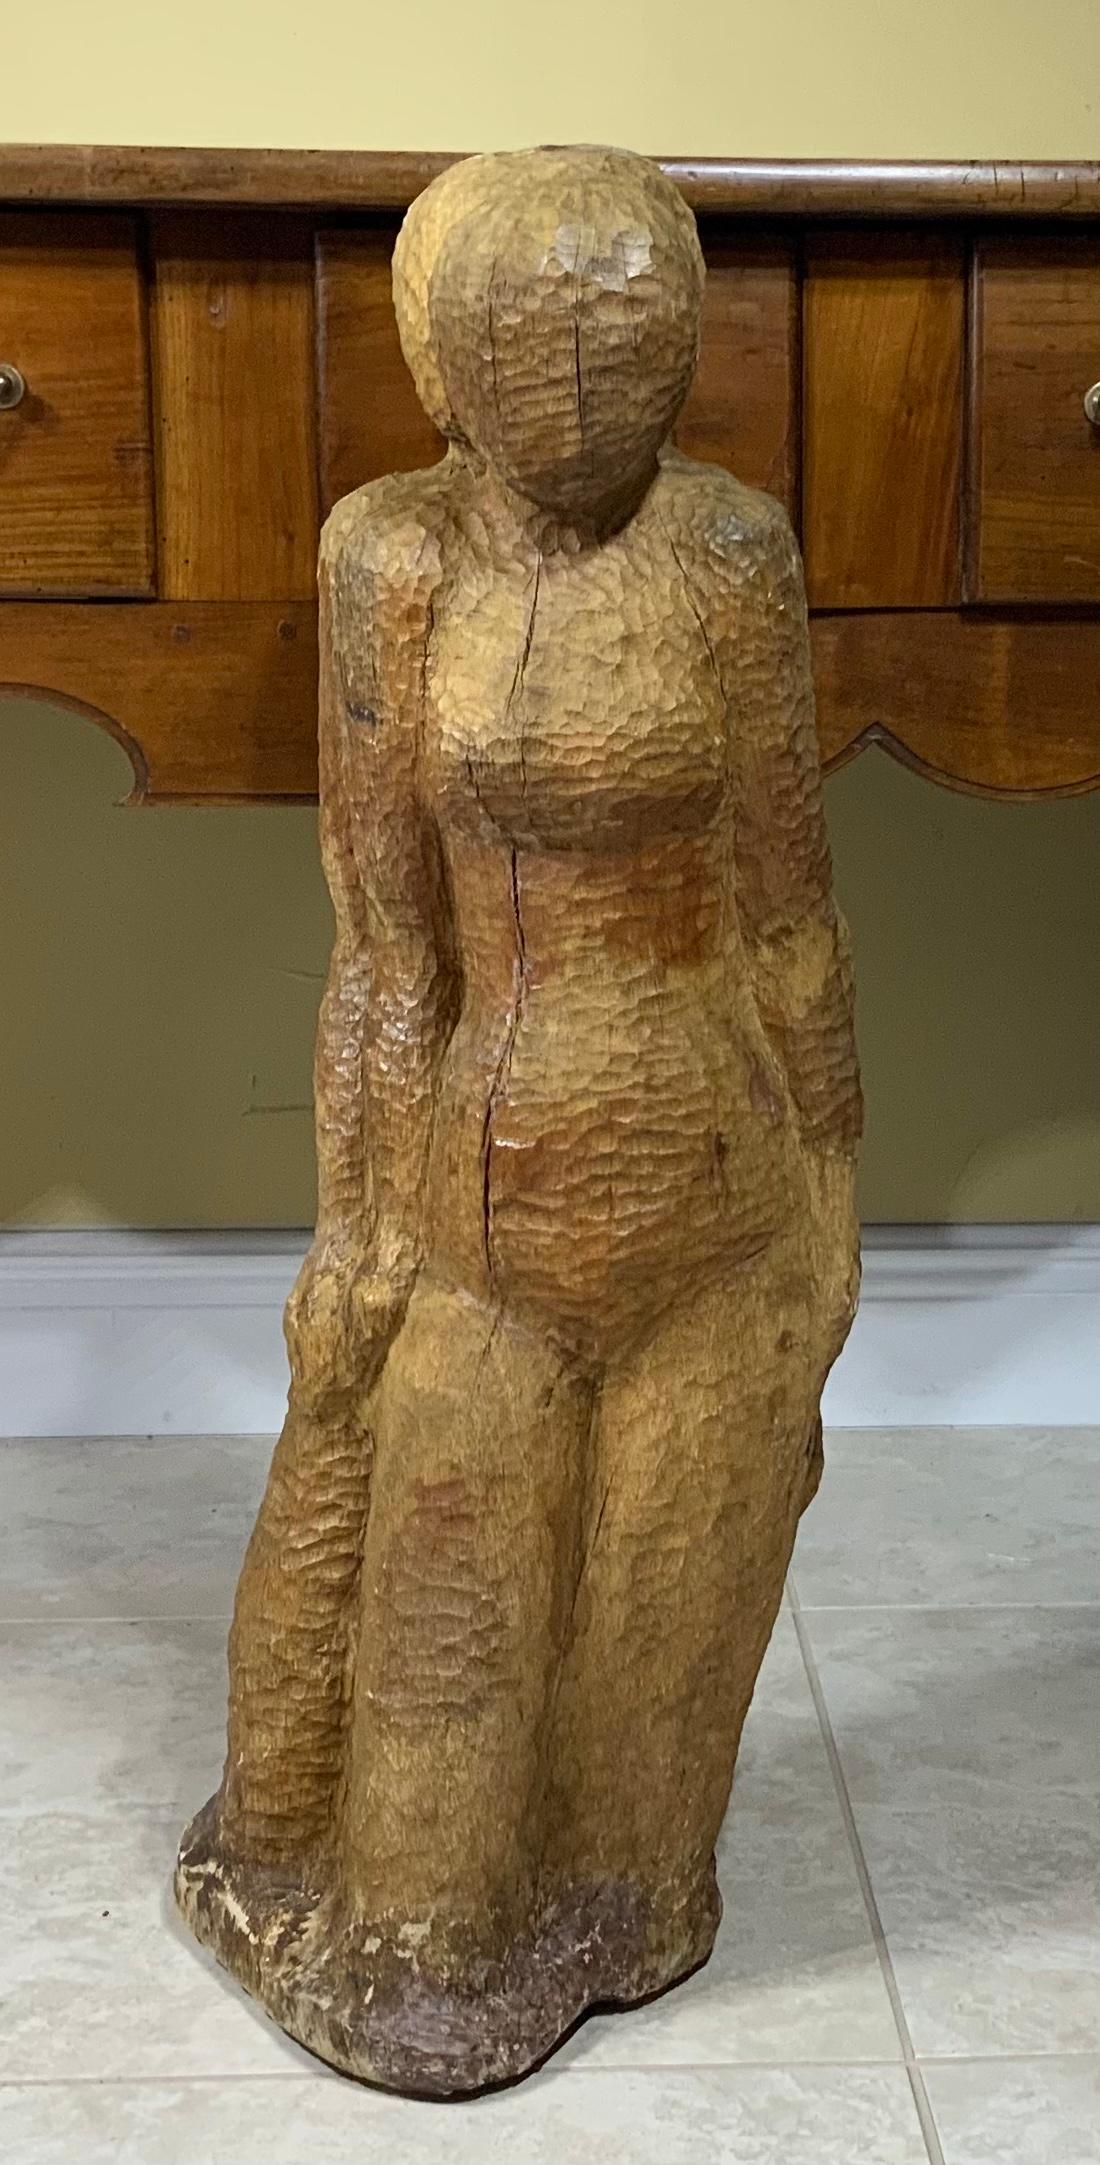 Élégante sculpture vintage en bois sculpté à la main représentant un couple enlacé, regardant vers l'avant.
Grand objet d'art à exposer.